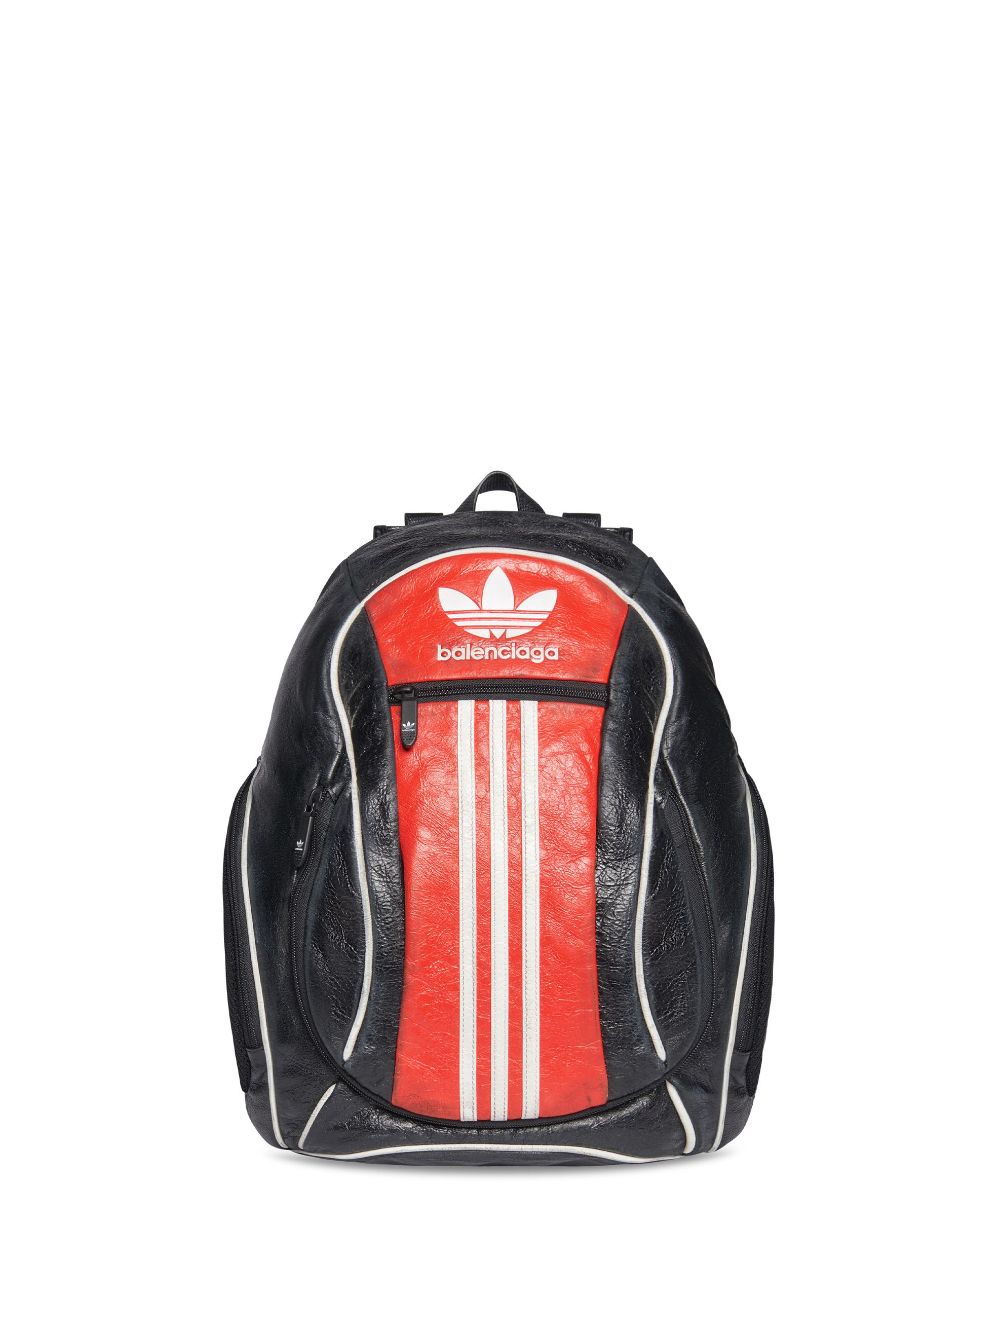 Balenciaga x Adidas Small Backpack - Farfetch